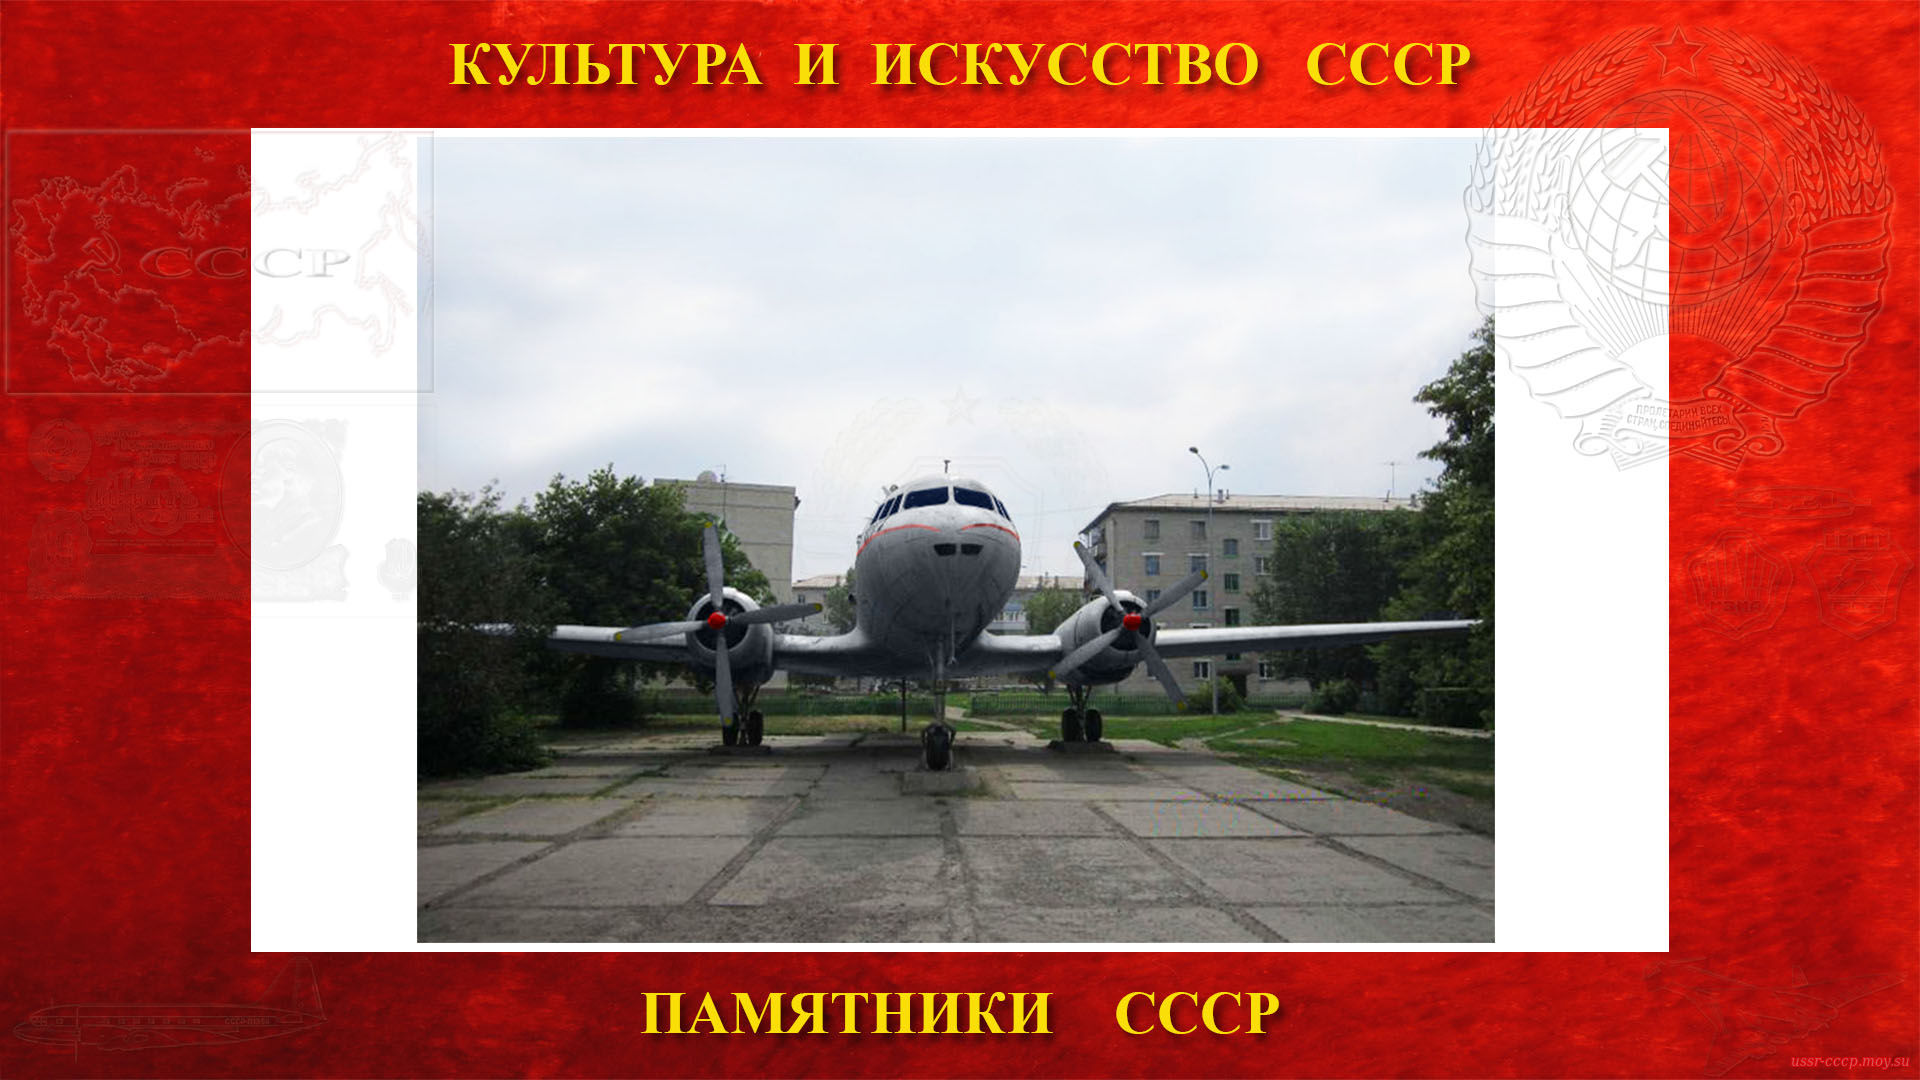 Памятник — Самолёт Ил-14 (Куйбышев)